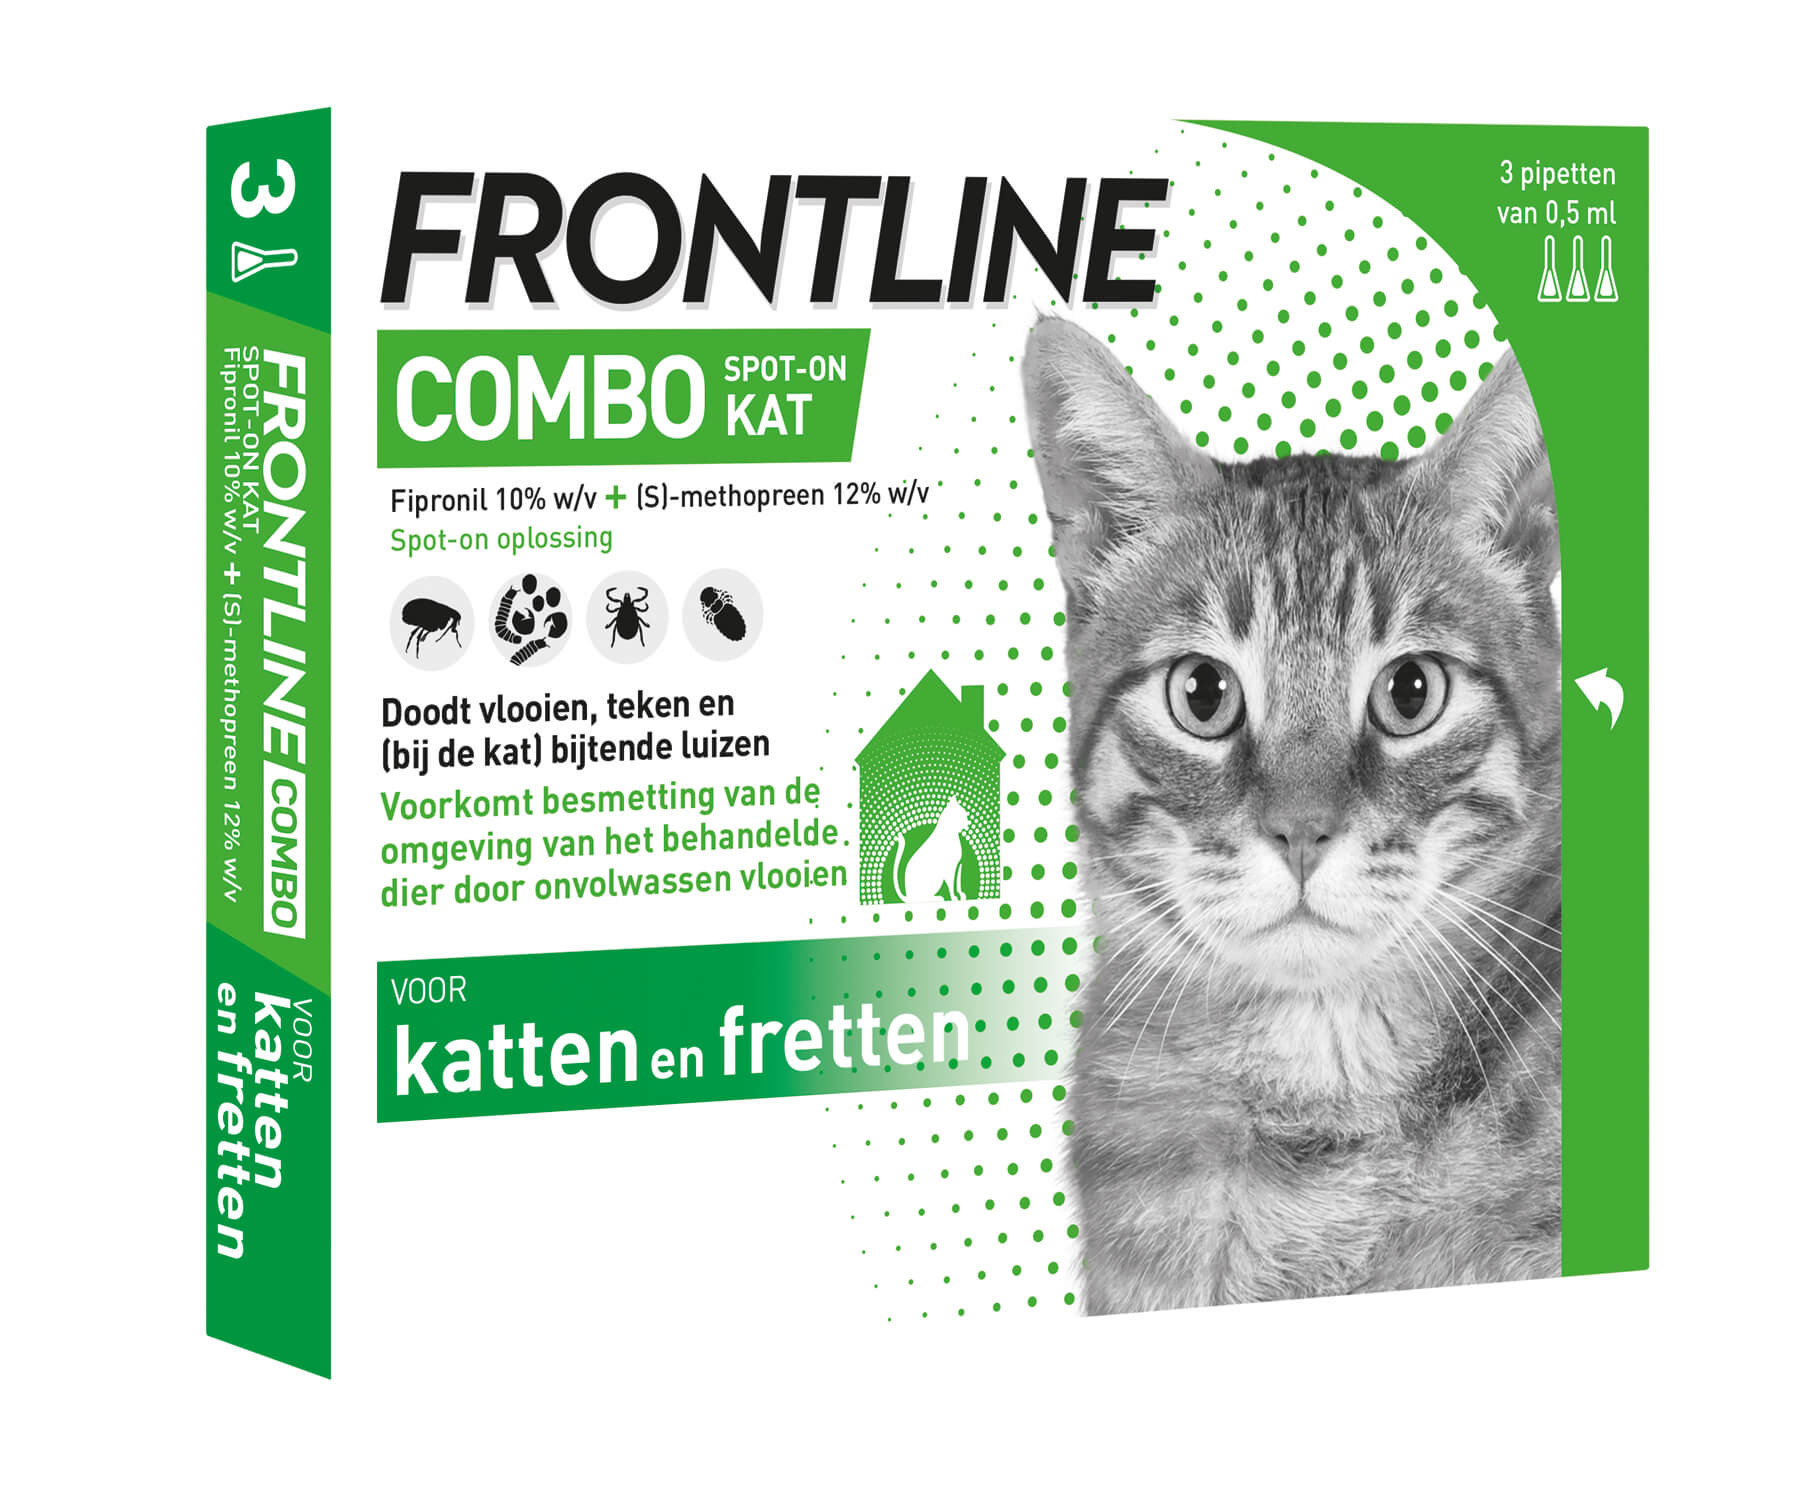 Afbeelding Frontline Combo Spot on Kat 3 pipetten door Brekz.nl